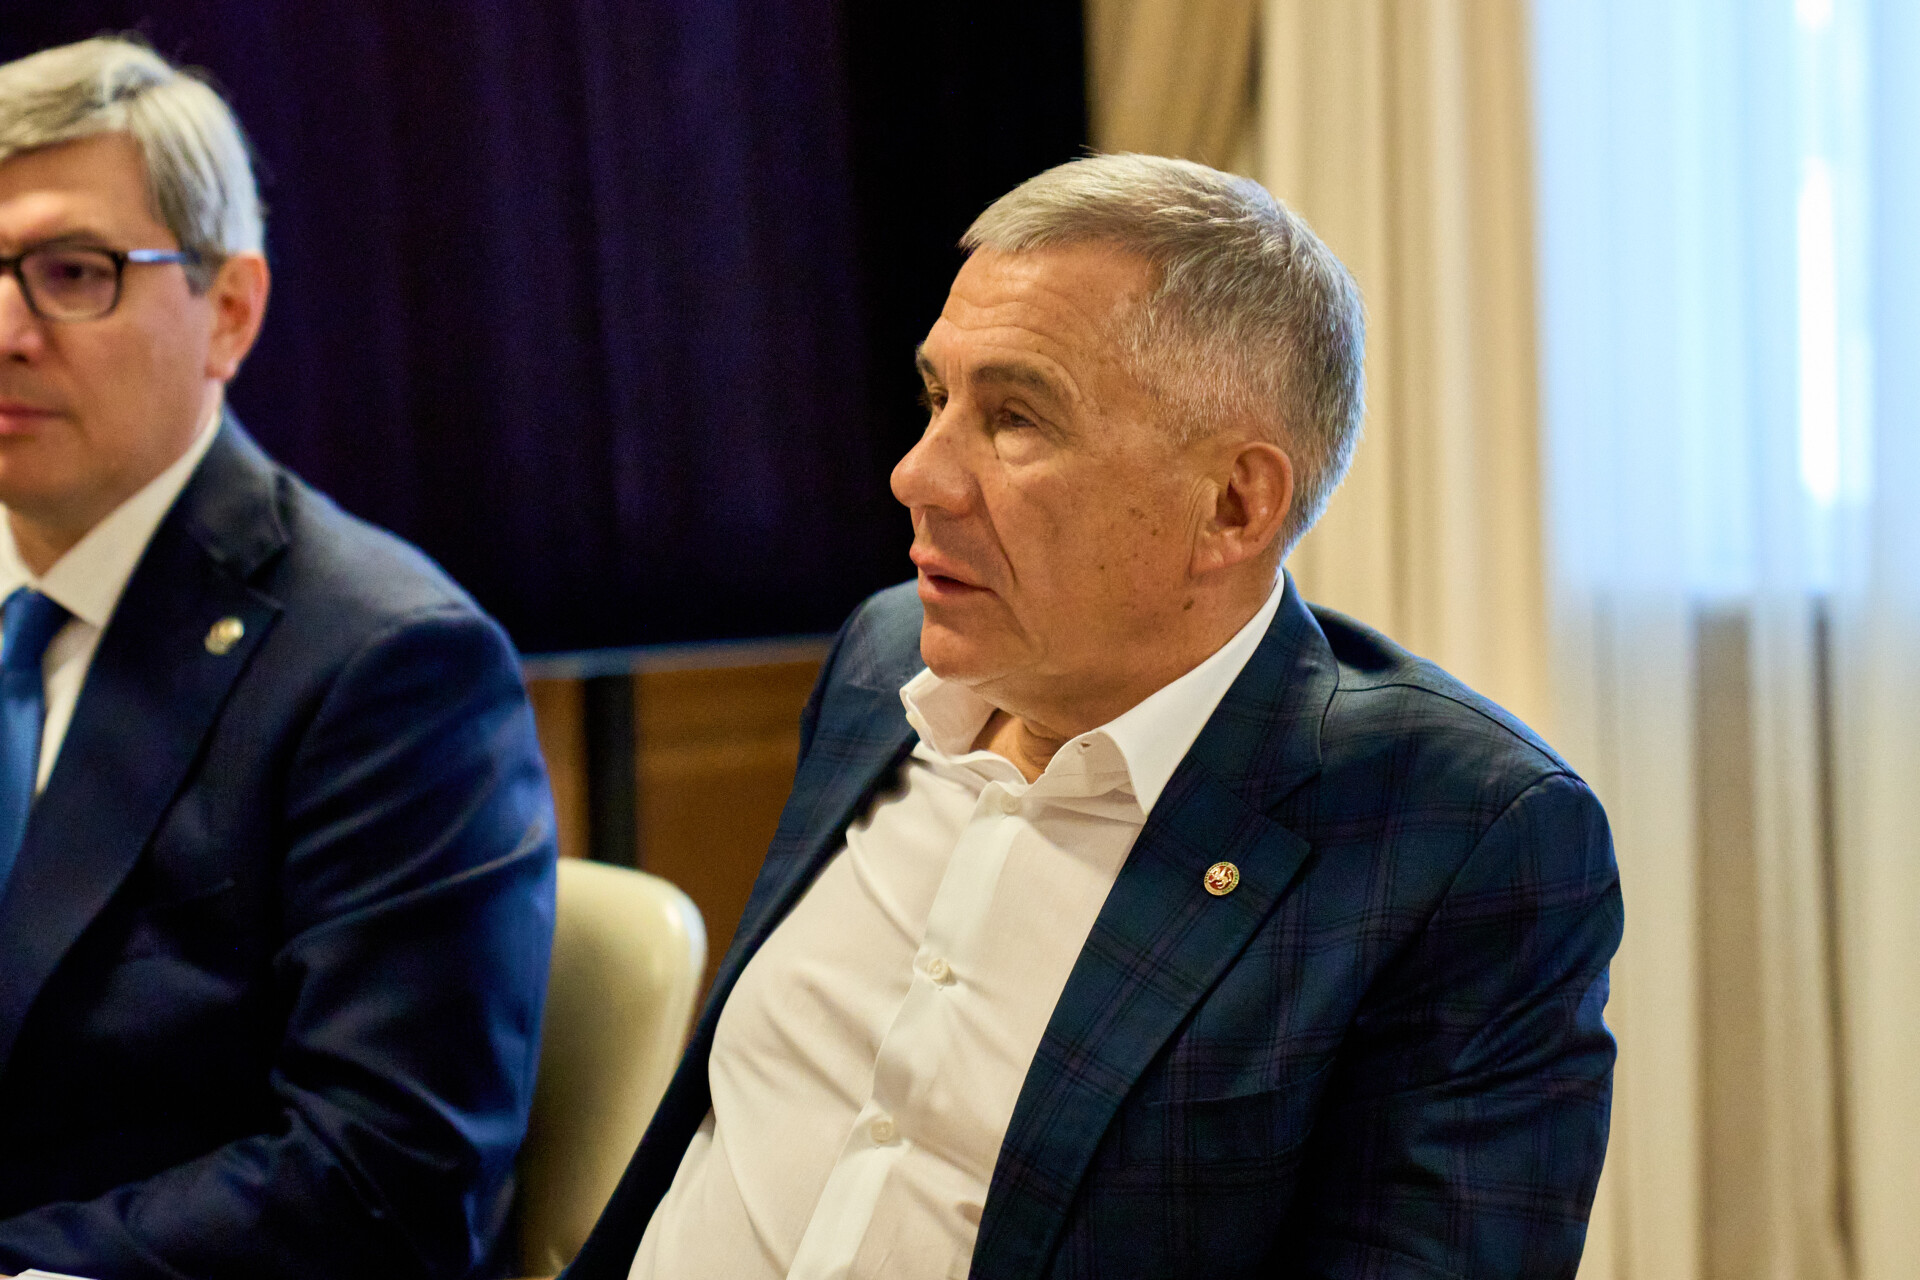 Минниханов и Фальков обсудили создание технопарков и вопросы привлечения IT-специалистов